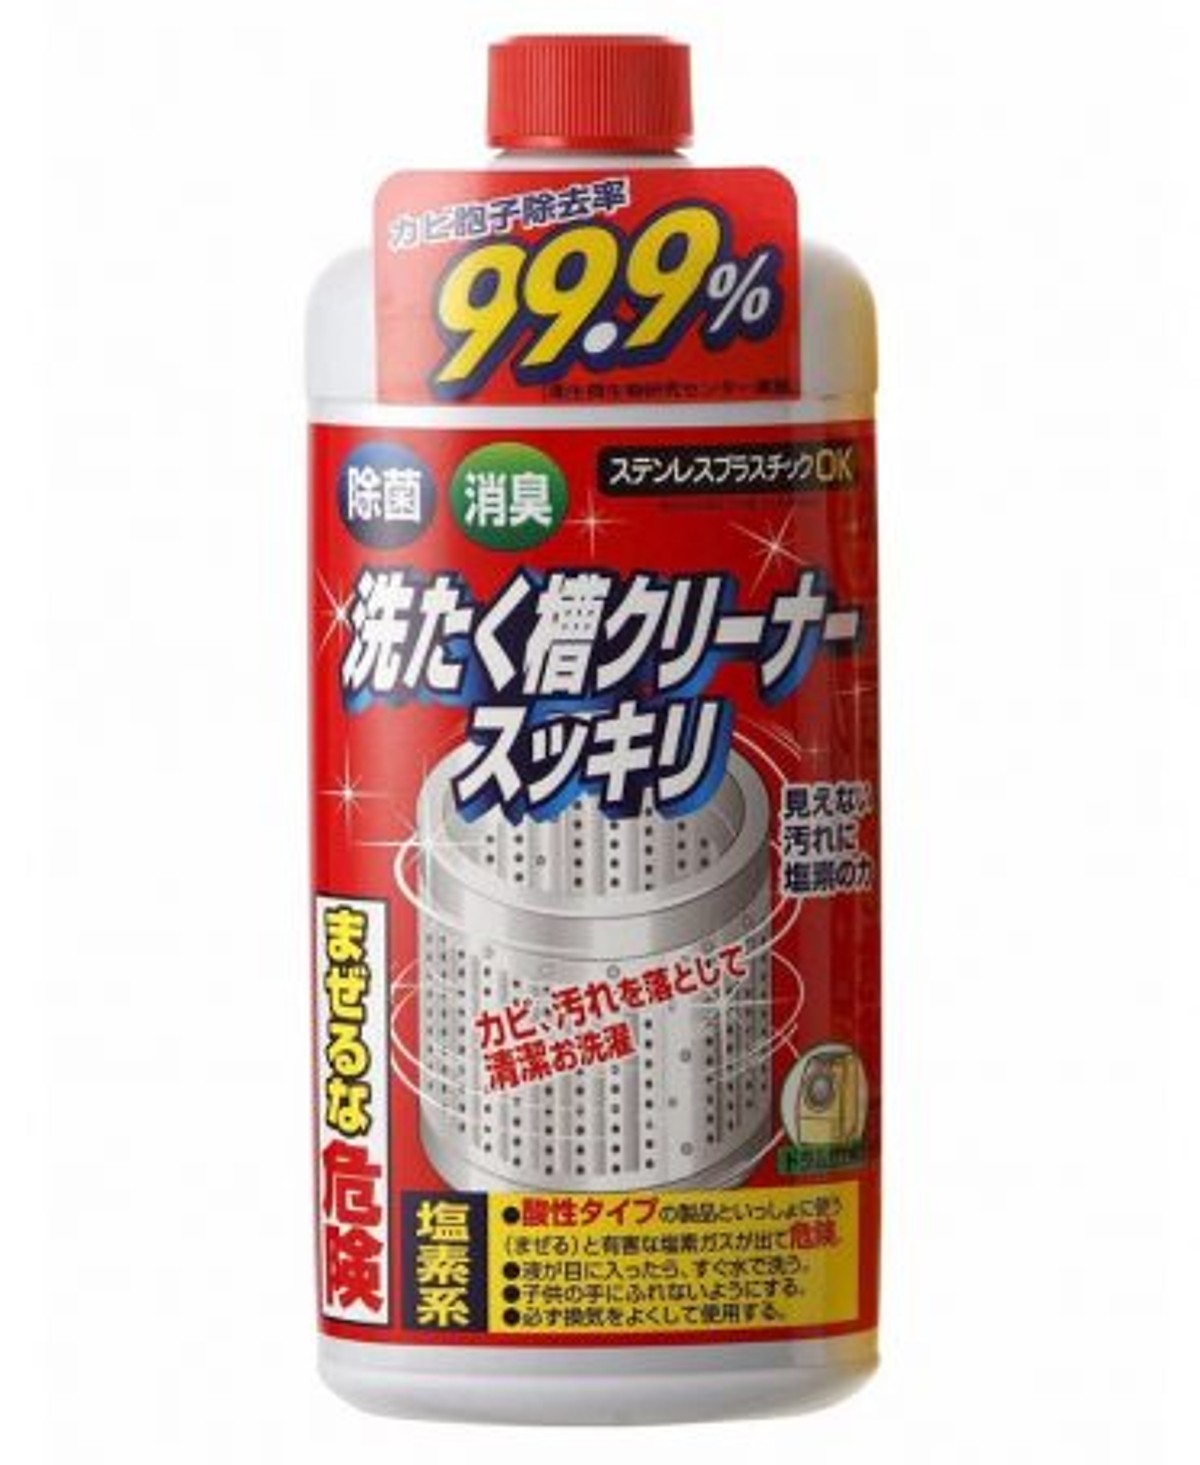 Combo Nước tẩy vệ sinh lồng máy giặt Rocket + Chai tẩy rửa bồn cầu Toilet Haiter KAO 500ml nội địa Nhật Bản